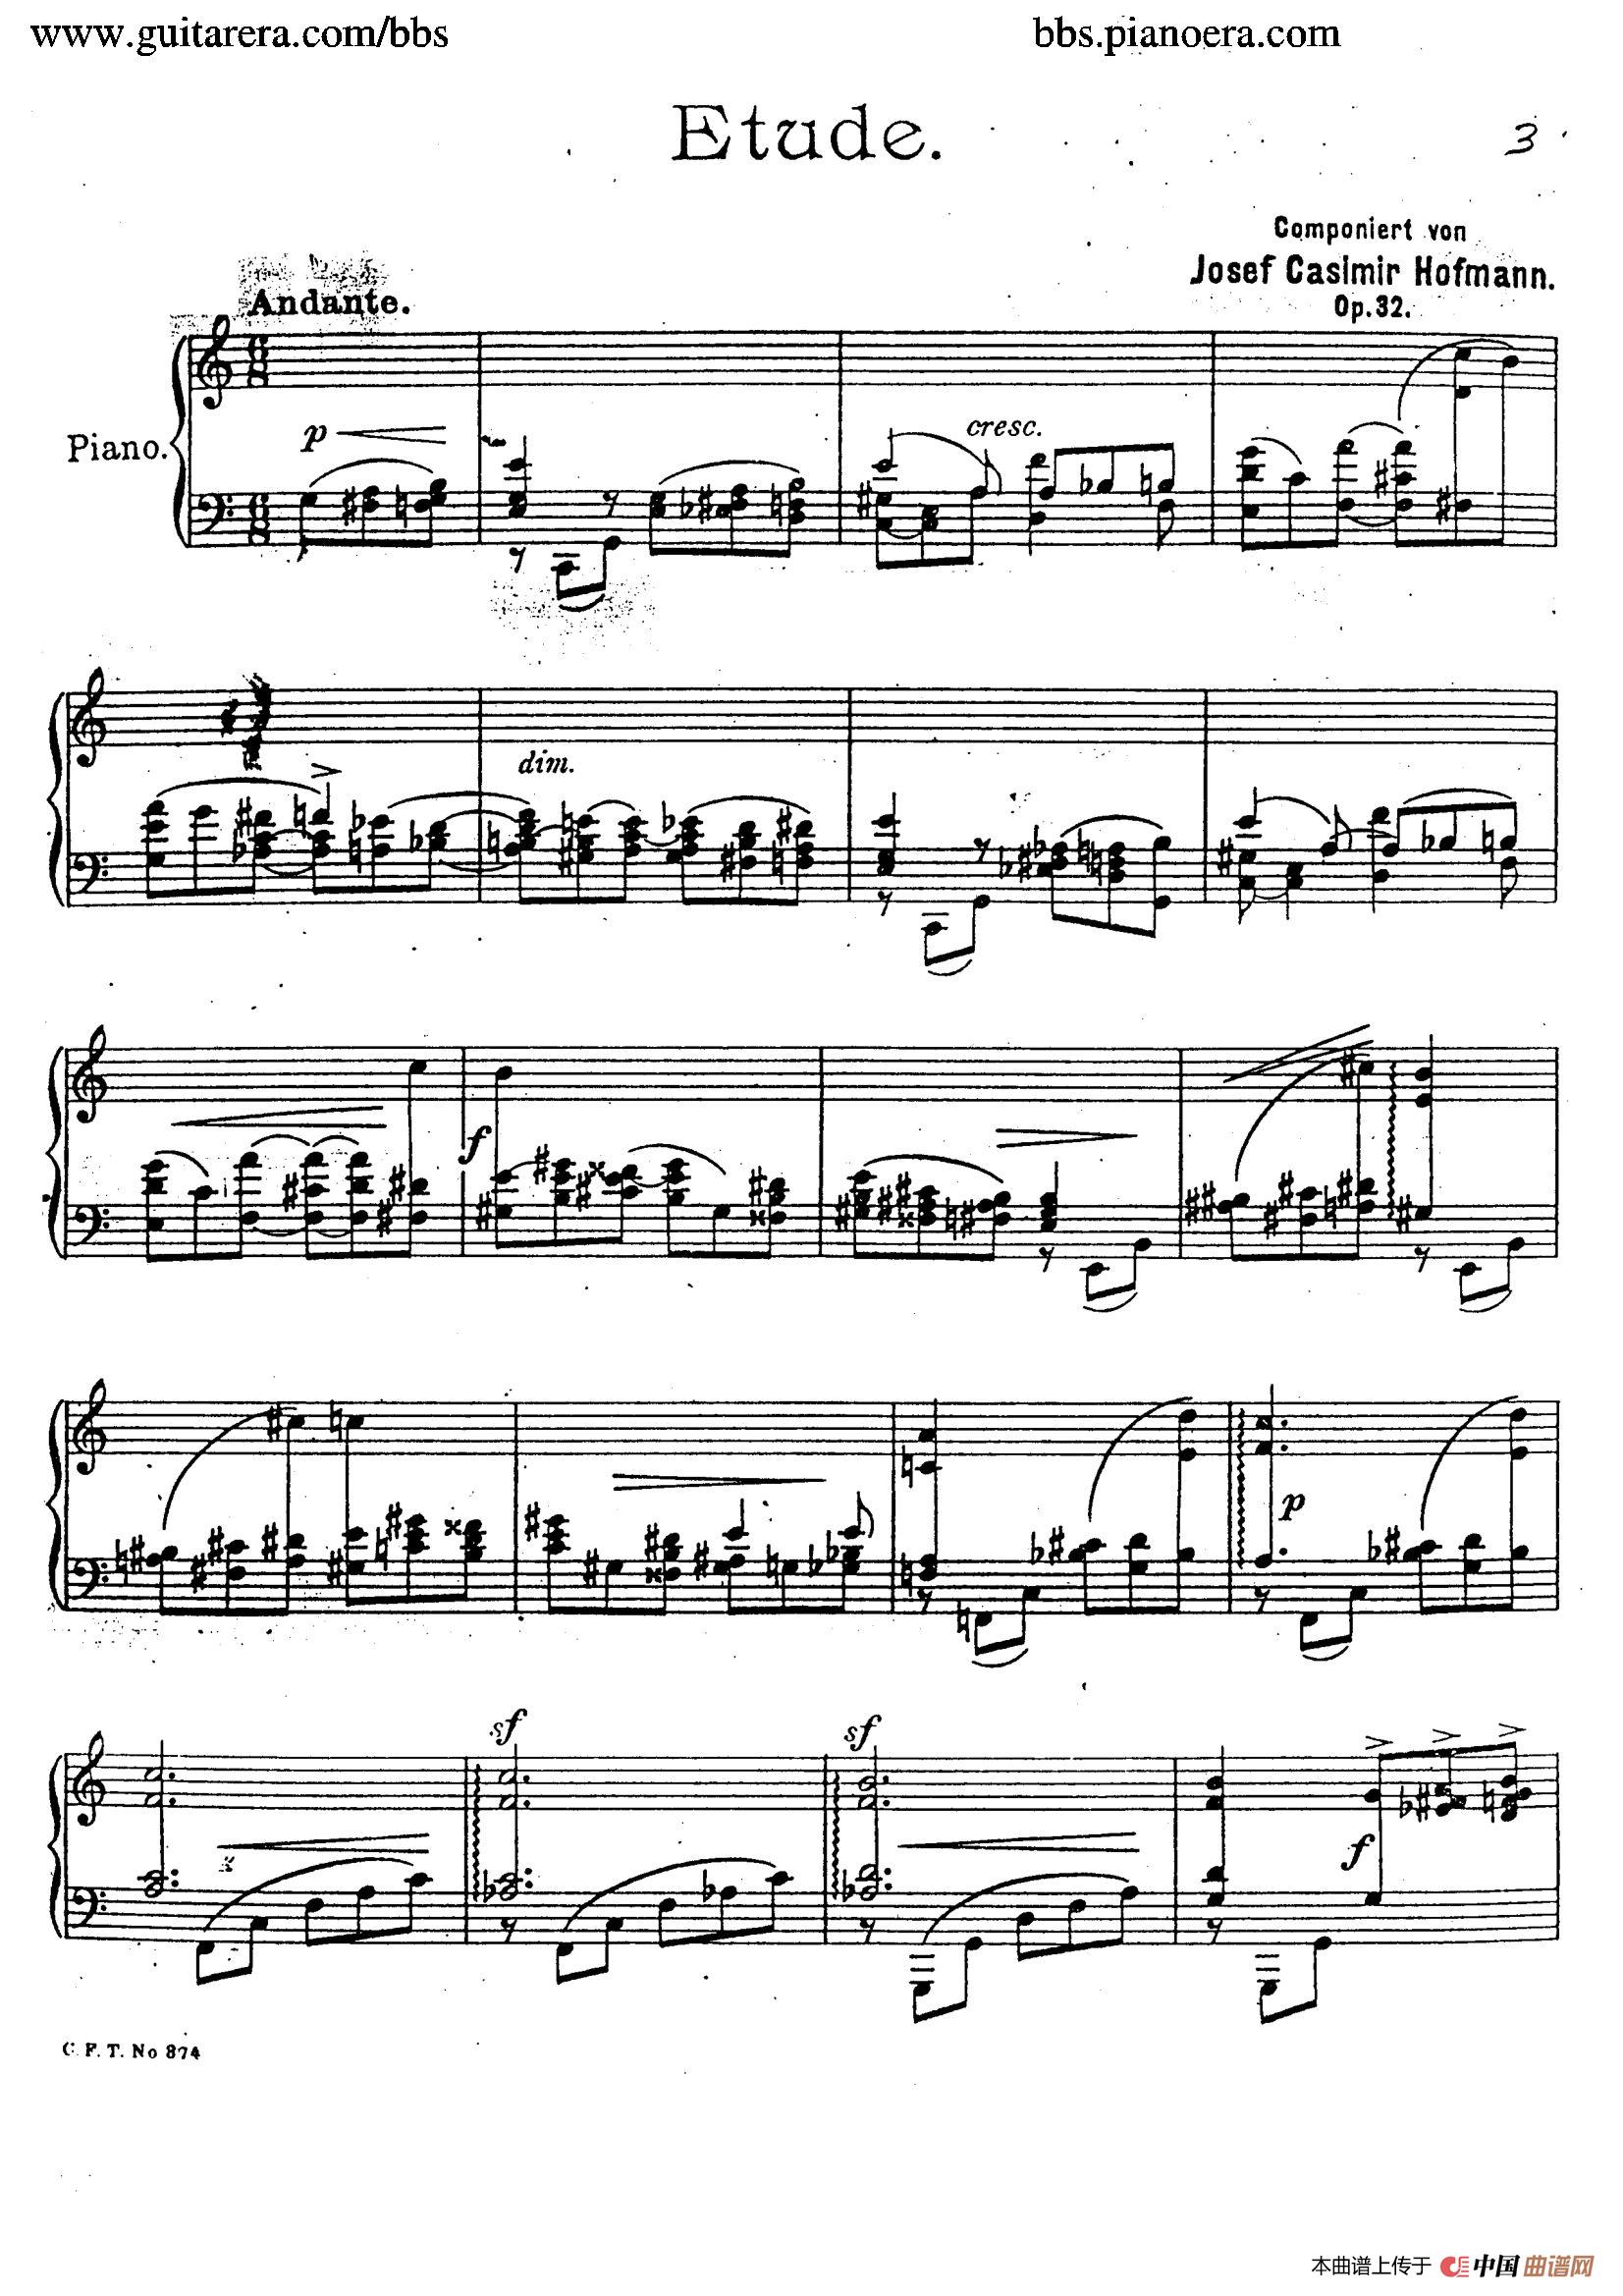 《Etude in C Major For The Left Hand Op.32》钢琴曲谱图分享